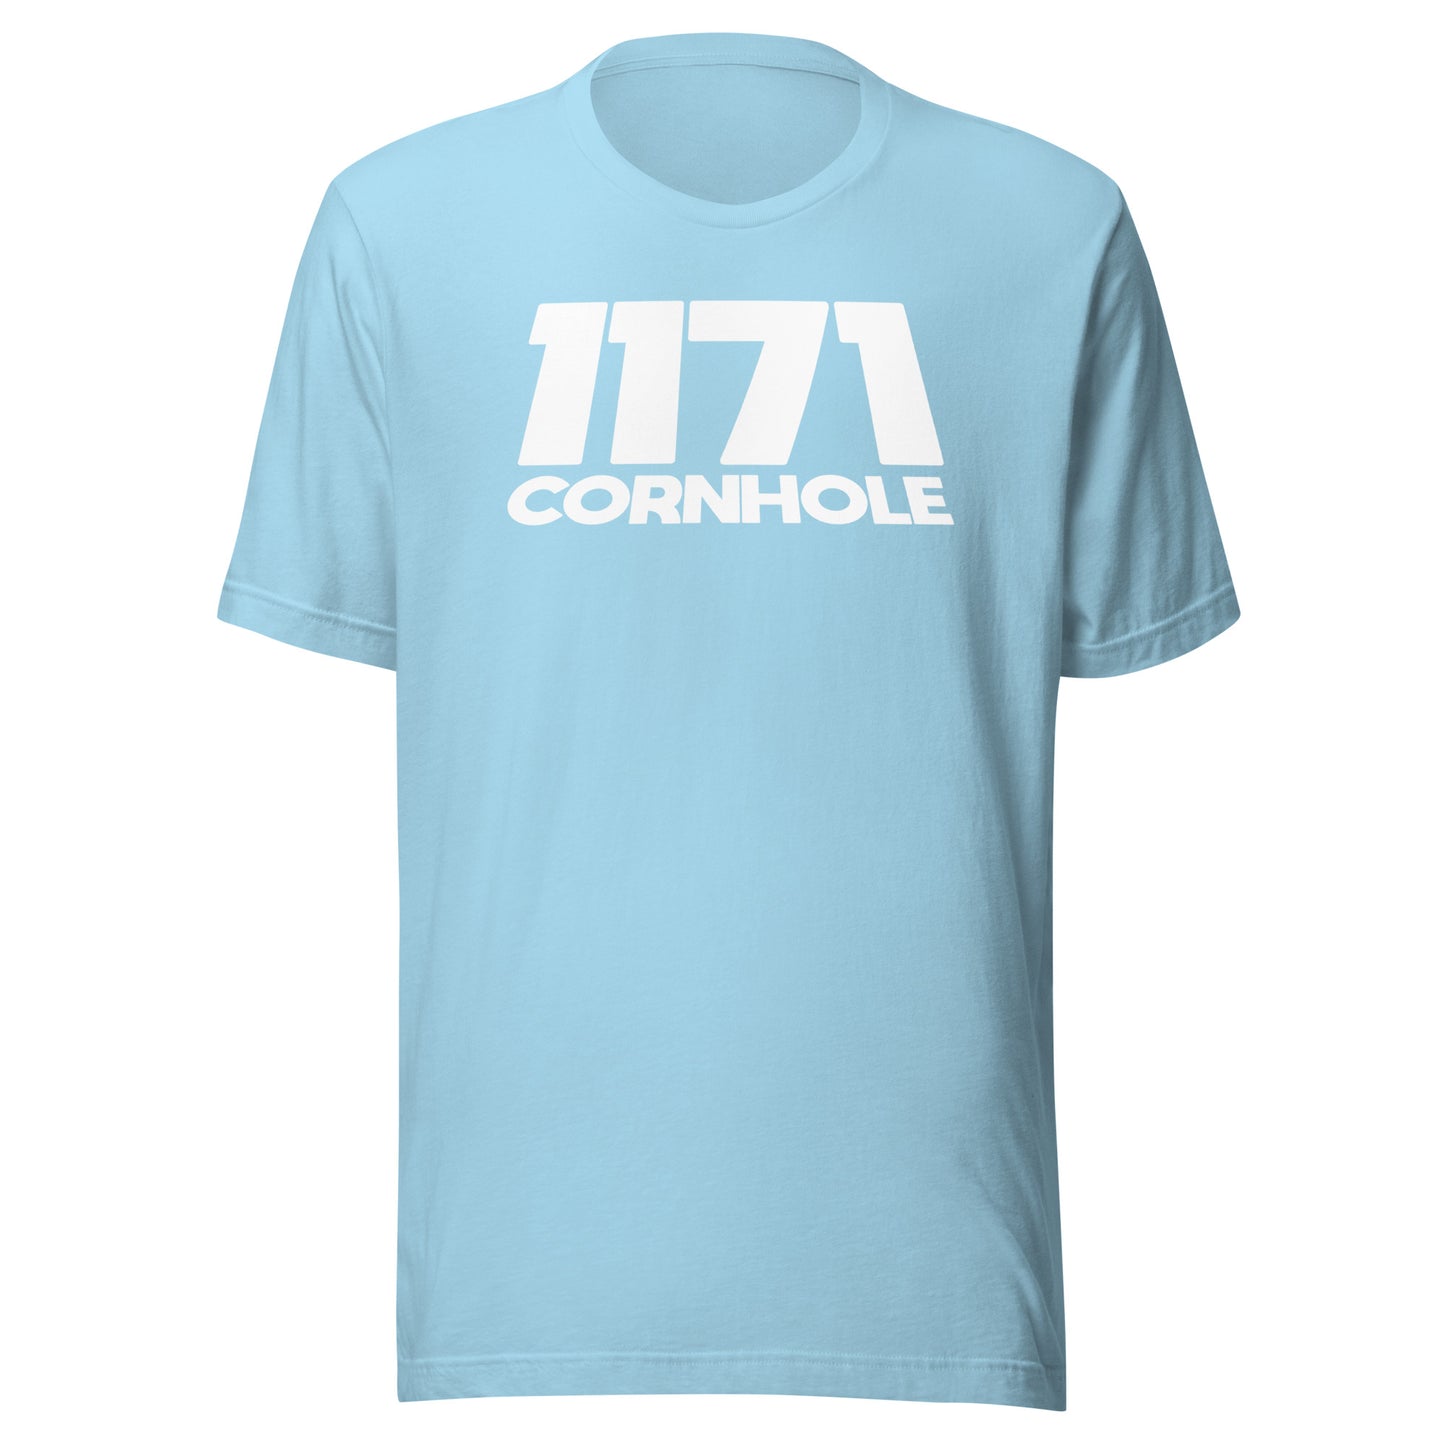 1171 Cornhole DTG T-Shirt